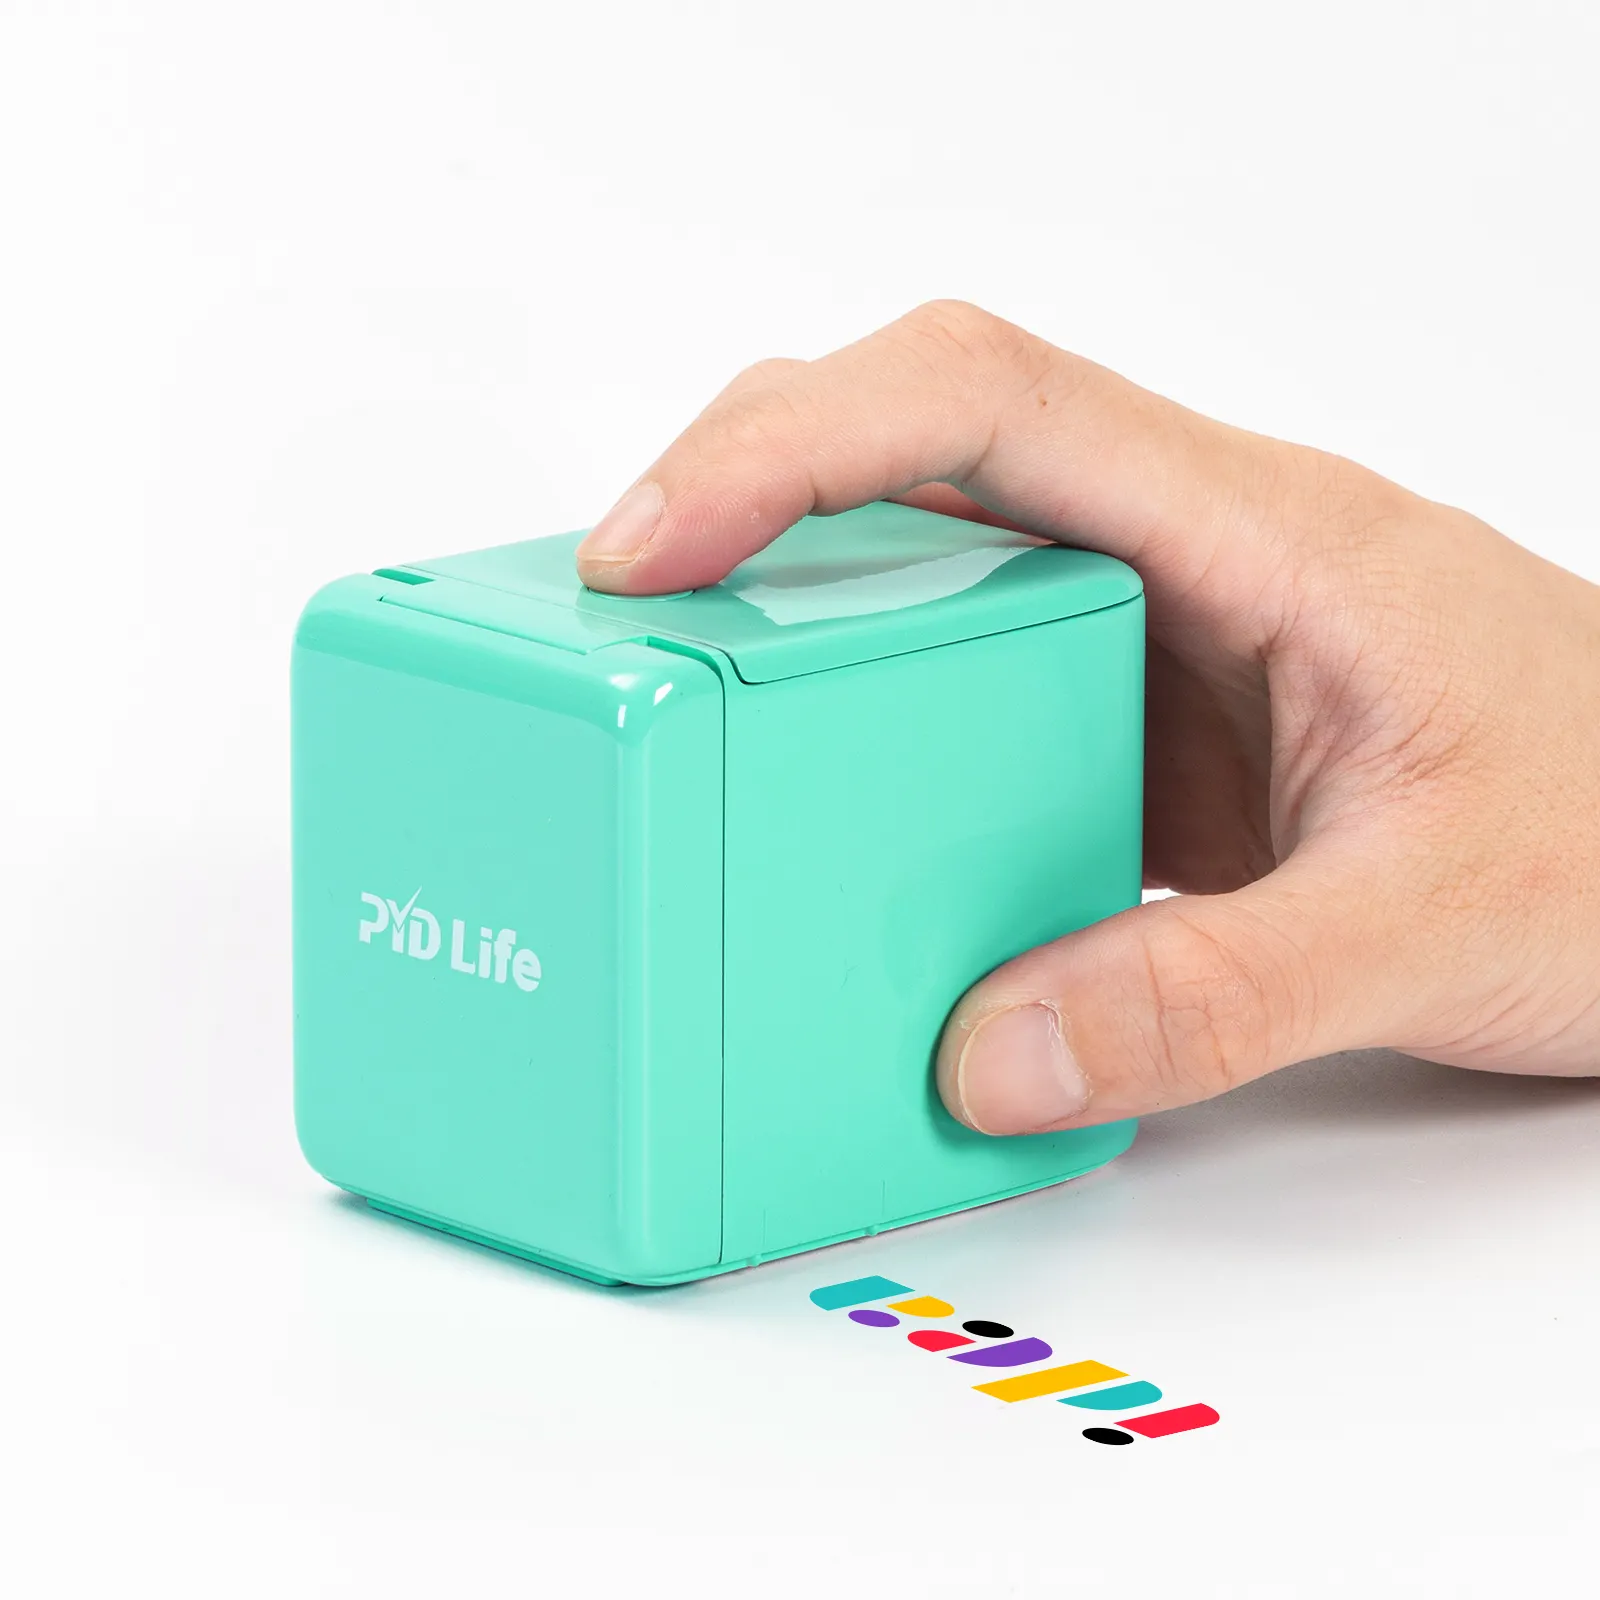 Pd Life stampanti a getto d'inchiostro digitali portatili portatili che stampano piccole altre Mini macchine per stampanti portatili a colori